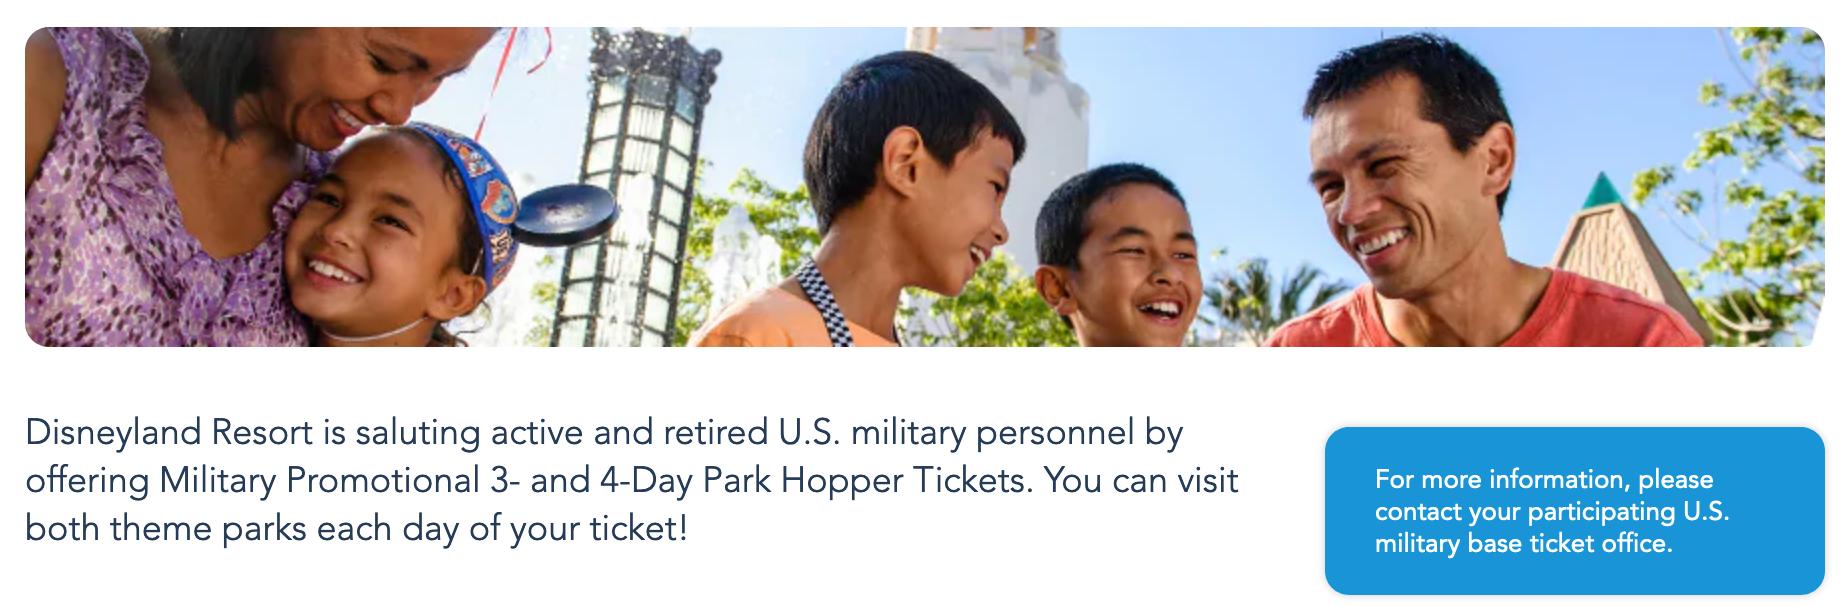 Disneyland Military Veteran Discounts